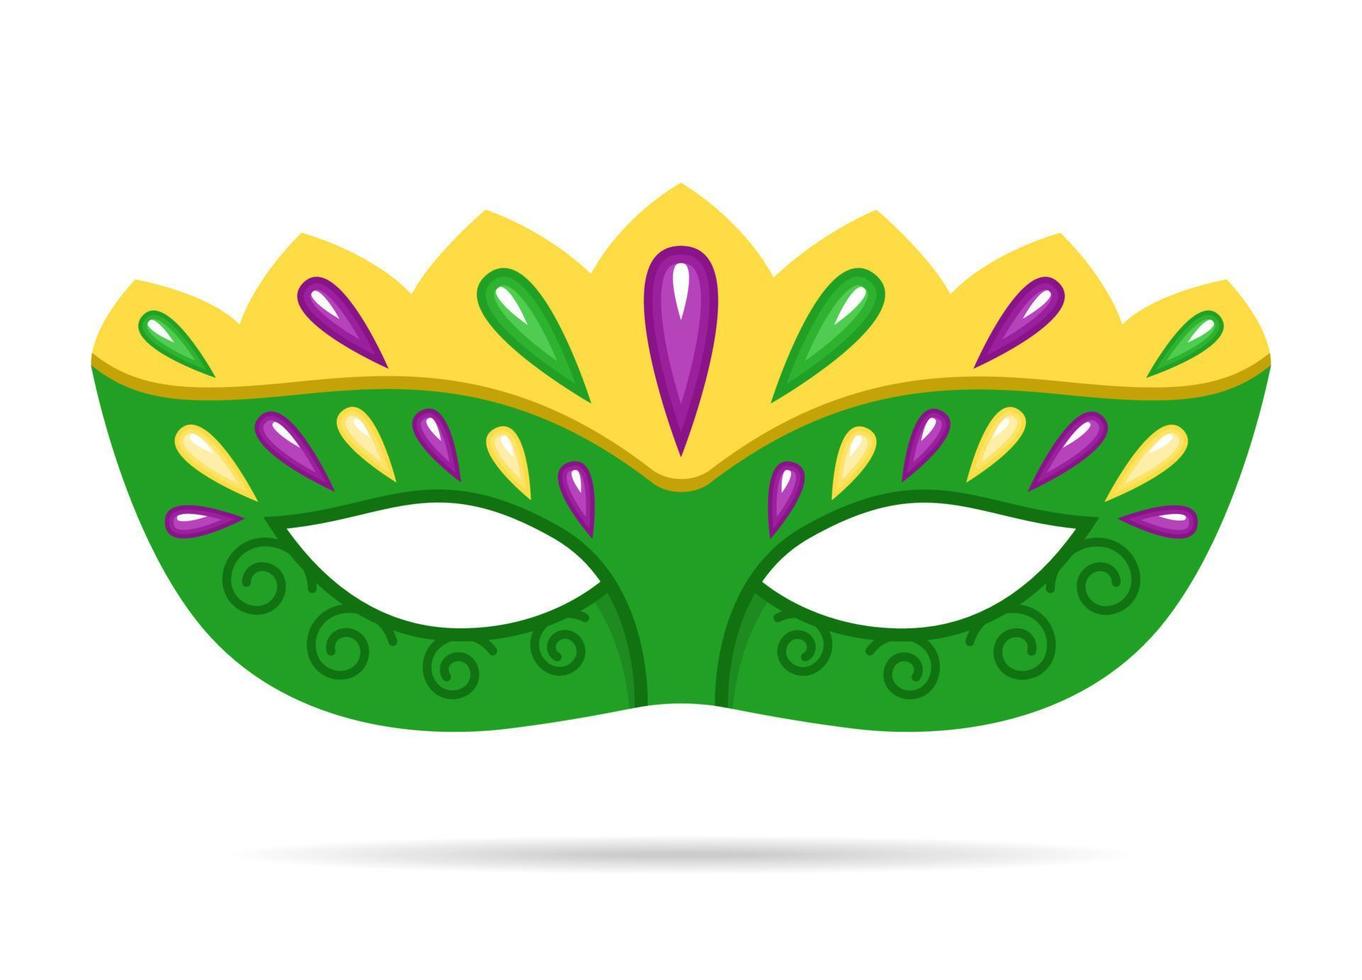 Vektor Karneval Cartoon grüne Maske auf weißem Hintergrund